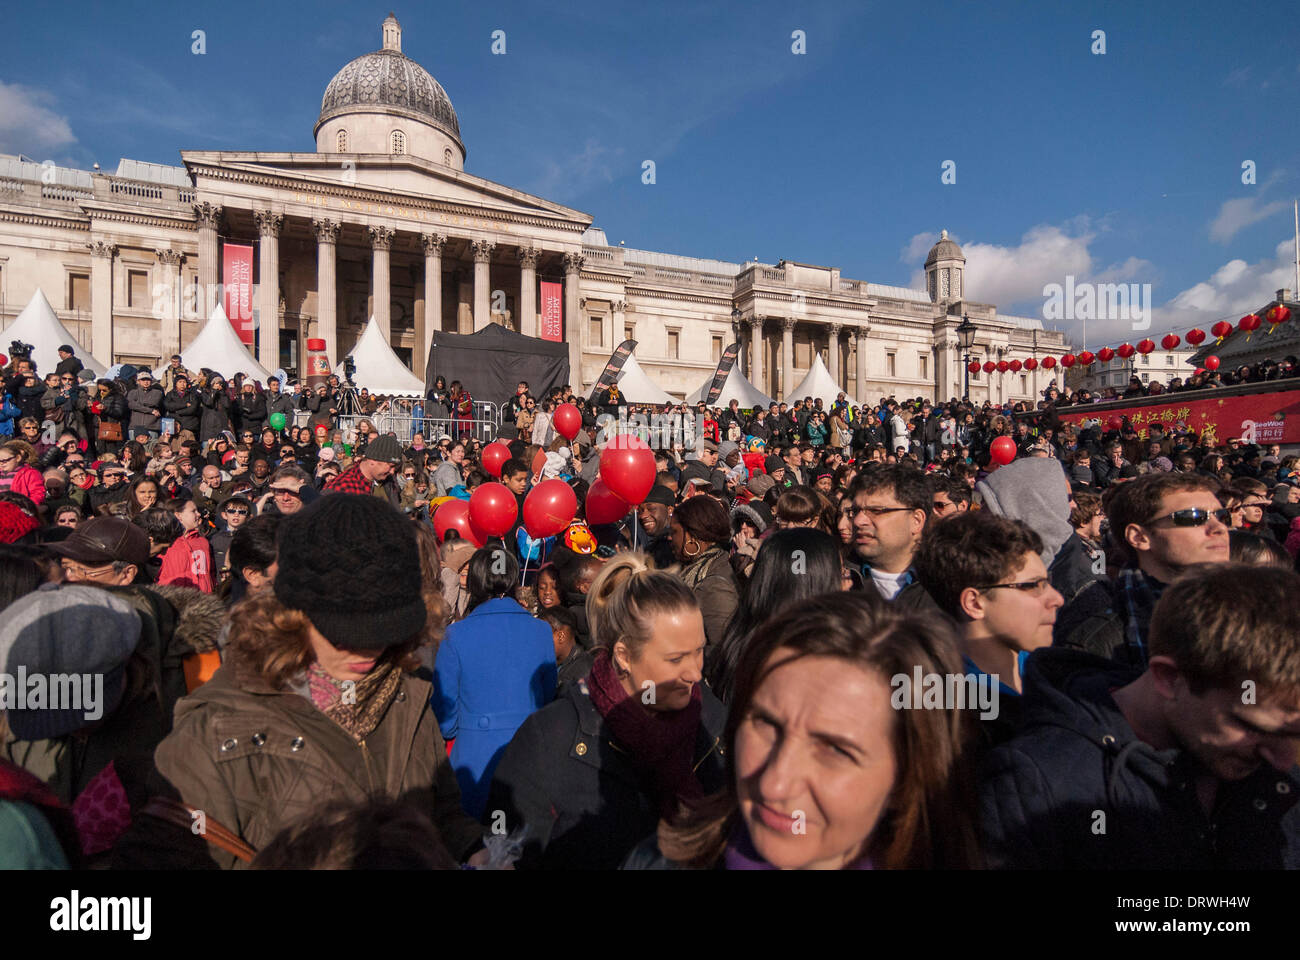 Trafalgar Square, London, UK. 2. Februar 2014. Tausende kommen, um Chinatown und dem Trafalgar Square zu feiern das Jahr des Pferdes: Stephen Chung/Alamy Live News Stockfoto